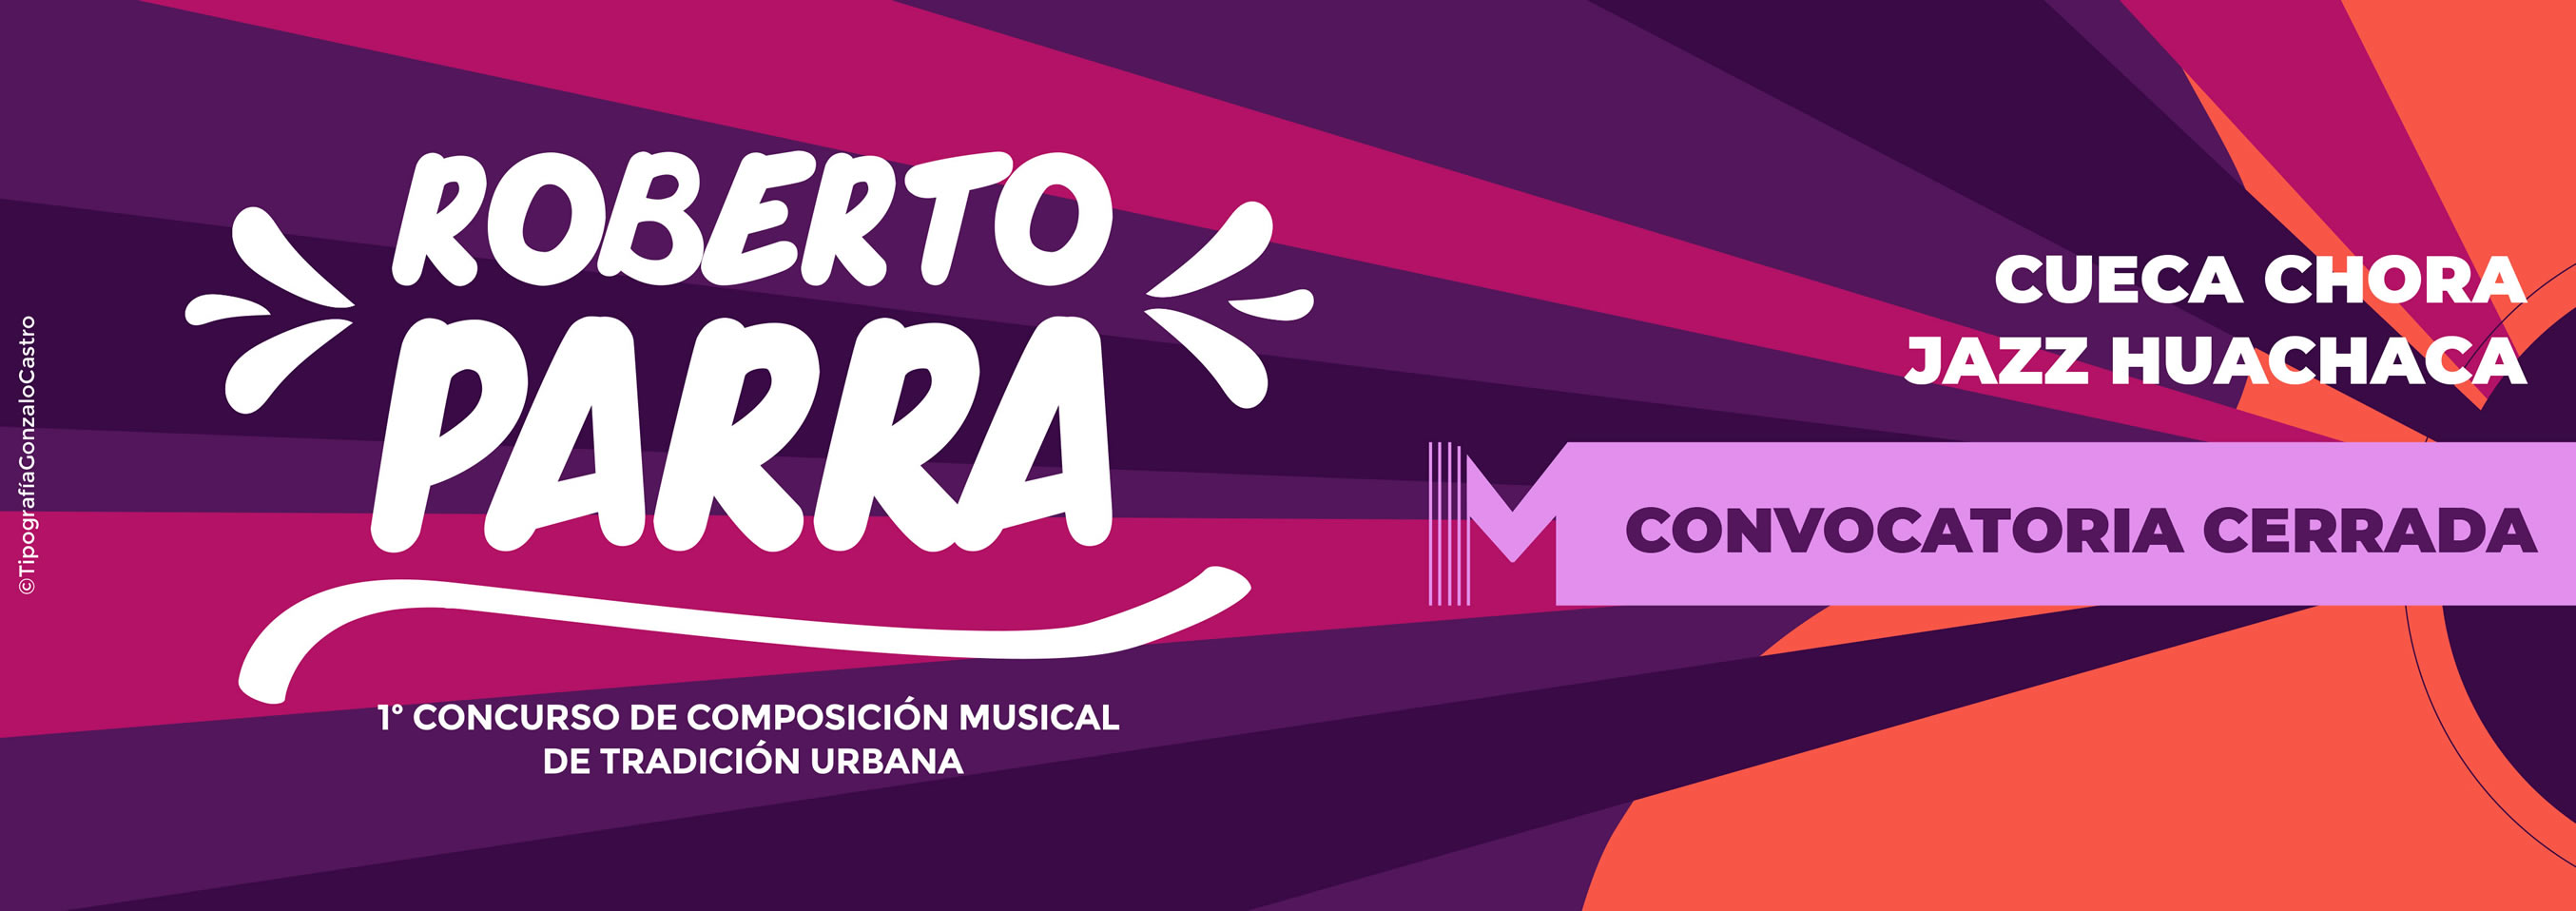 1er Concurso de composición musical de tradición urbana Roberto Parra